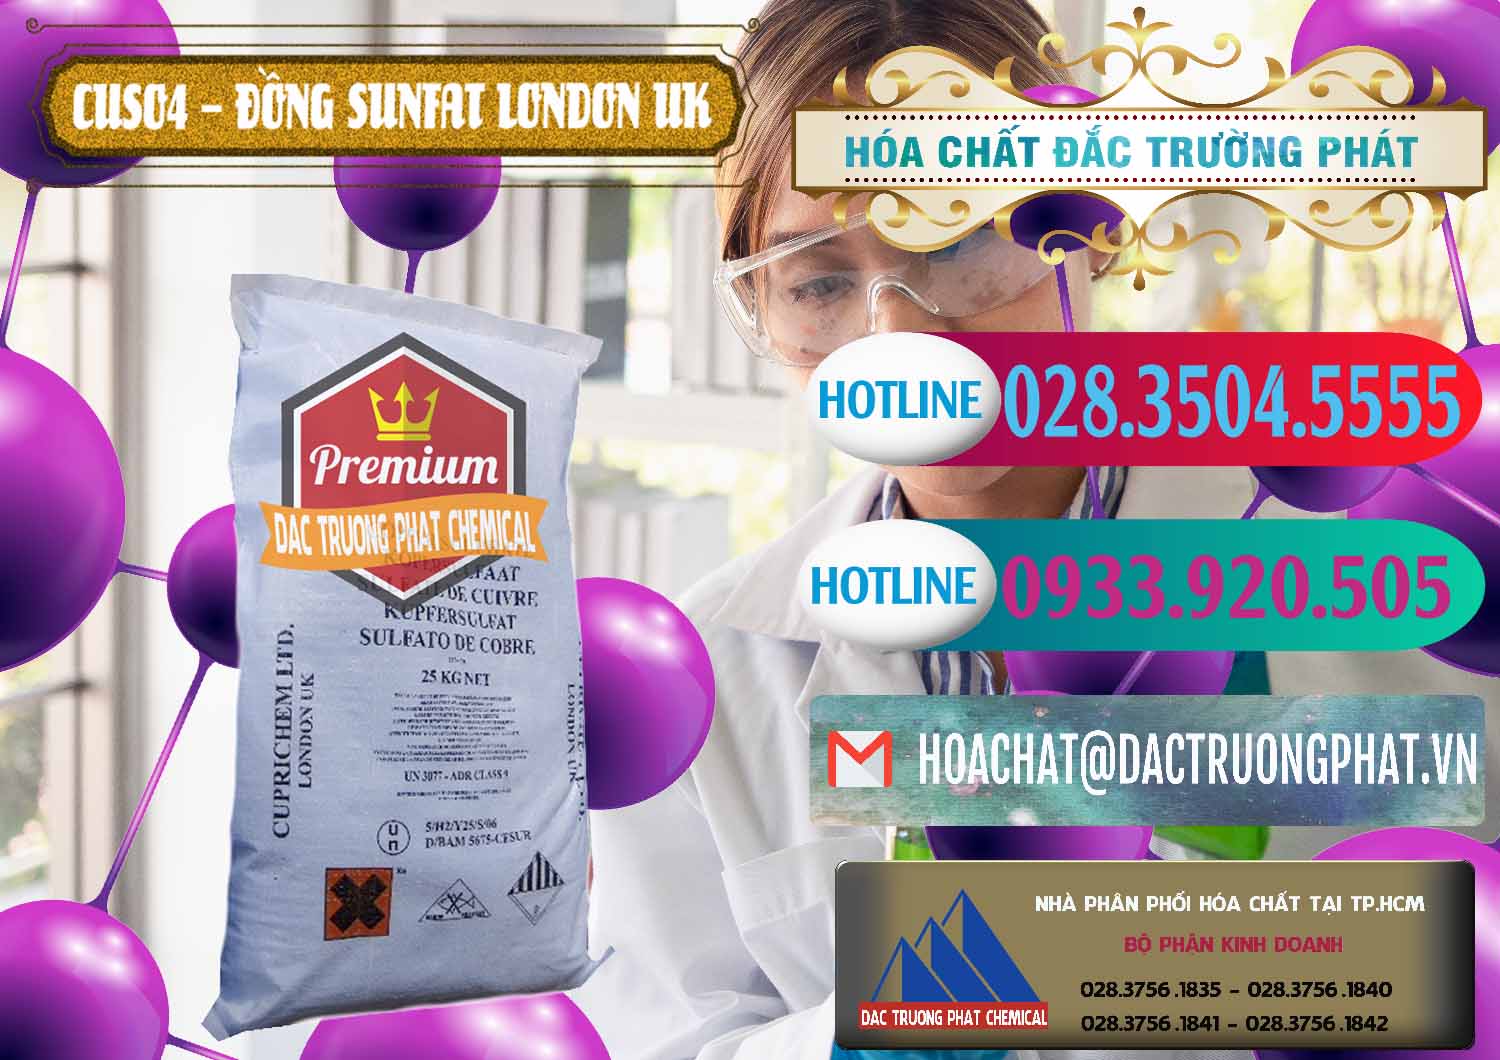 Đơn vị chuyên cung ứng _ bán CuSO4 – Đồng Sunfat Anh Uk Kingdoms - 0478 - Phân phối và cung ứng hóa chất tại TP.HCM - truongphat.vn